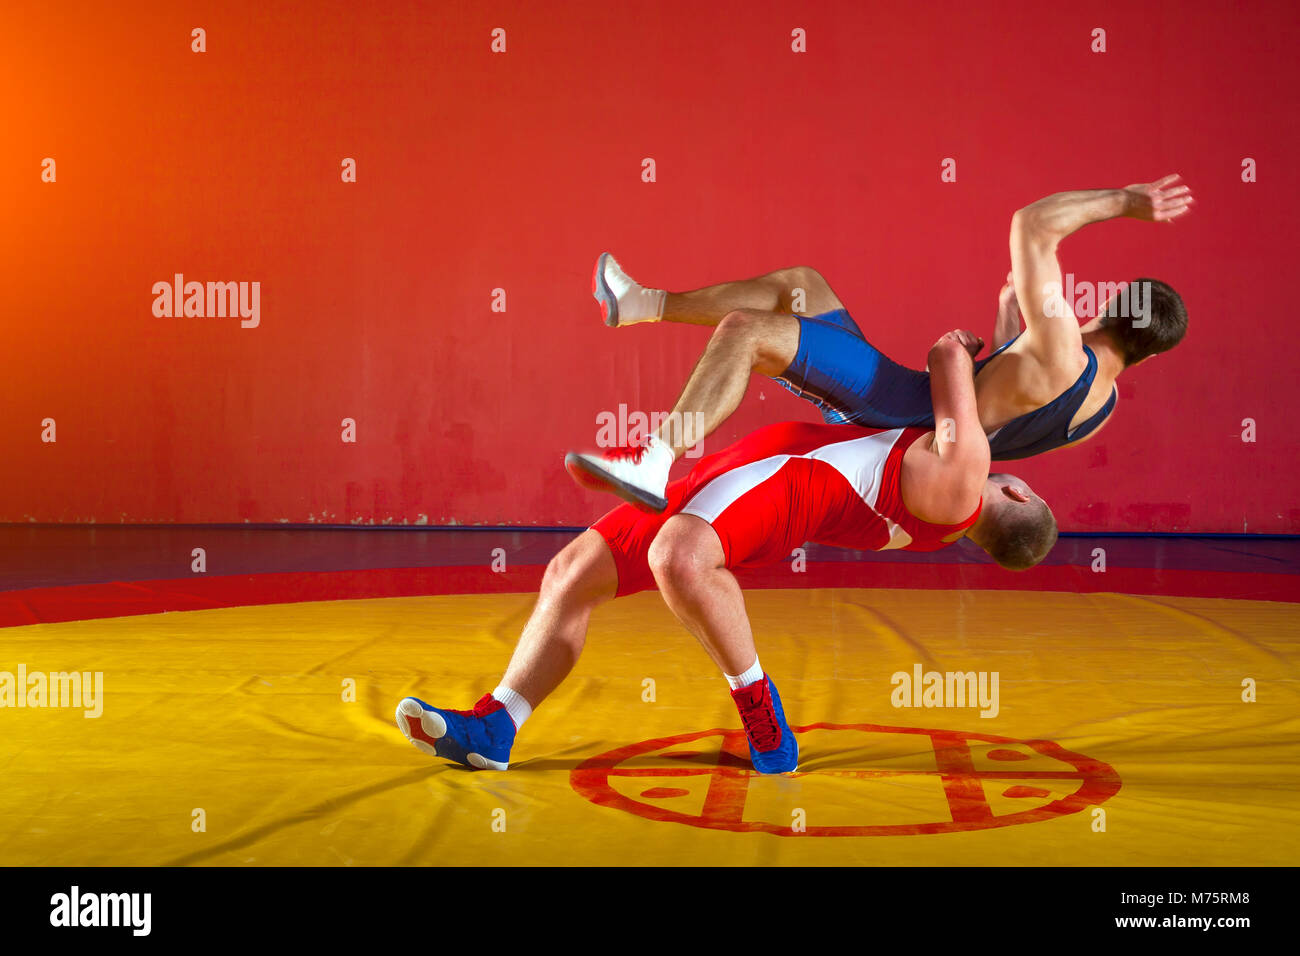 Deux lutteurs gréco-romain en uniforme rouge et bleu sur fond de lutte sur un tapis de lutte jaune dans la salle de sport Banque D'Images